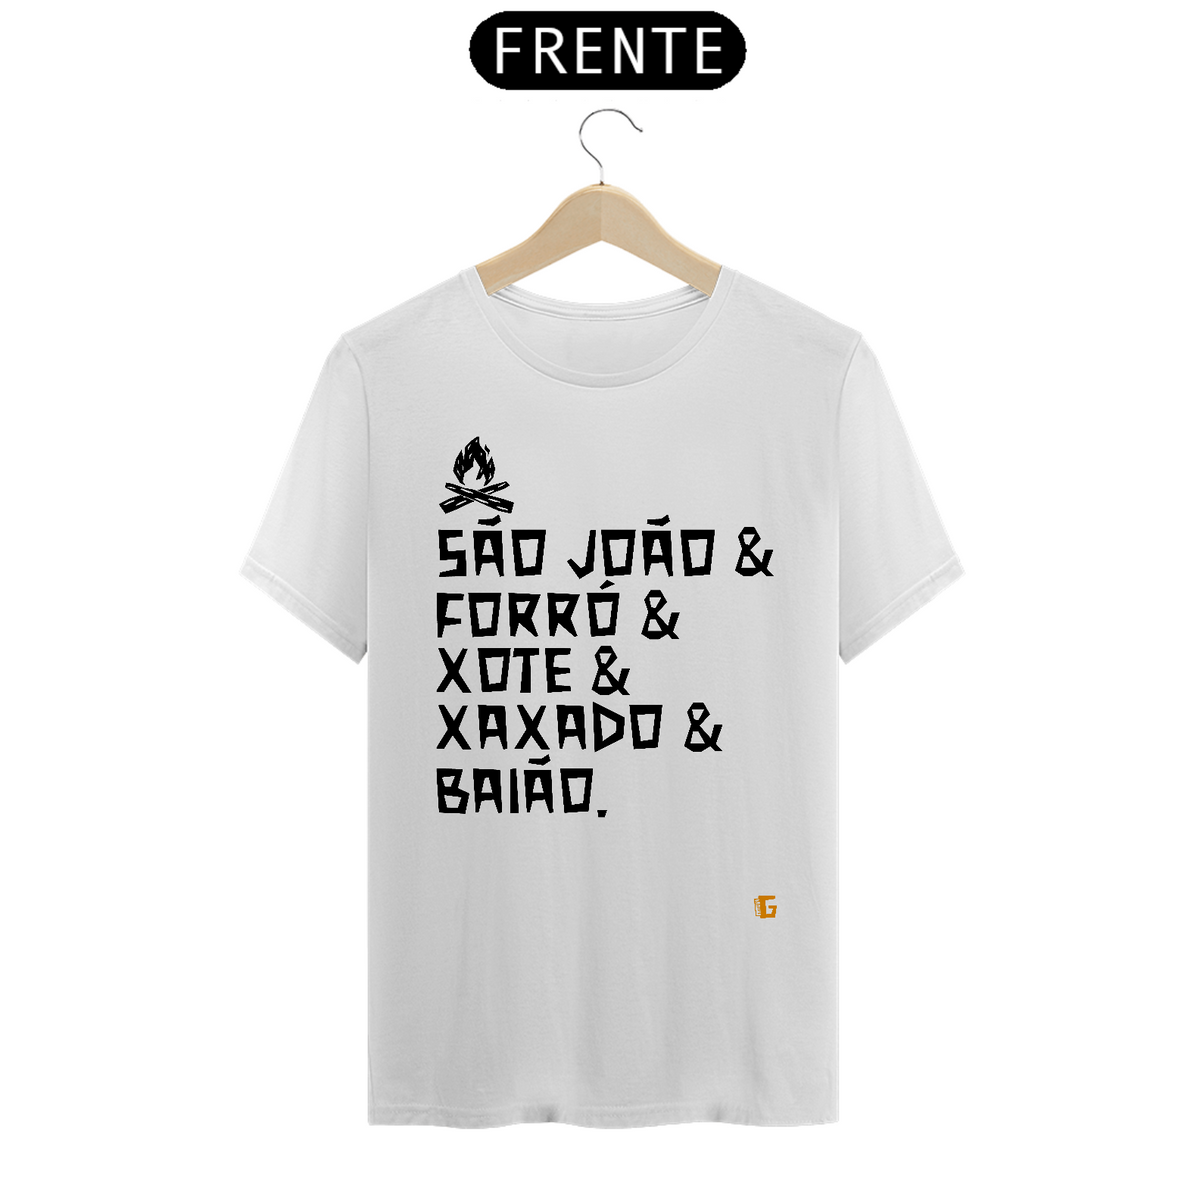 Nome do produto: Camisa Masculina São João & Forró - Texto Preto